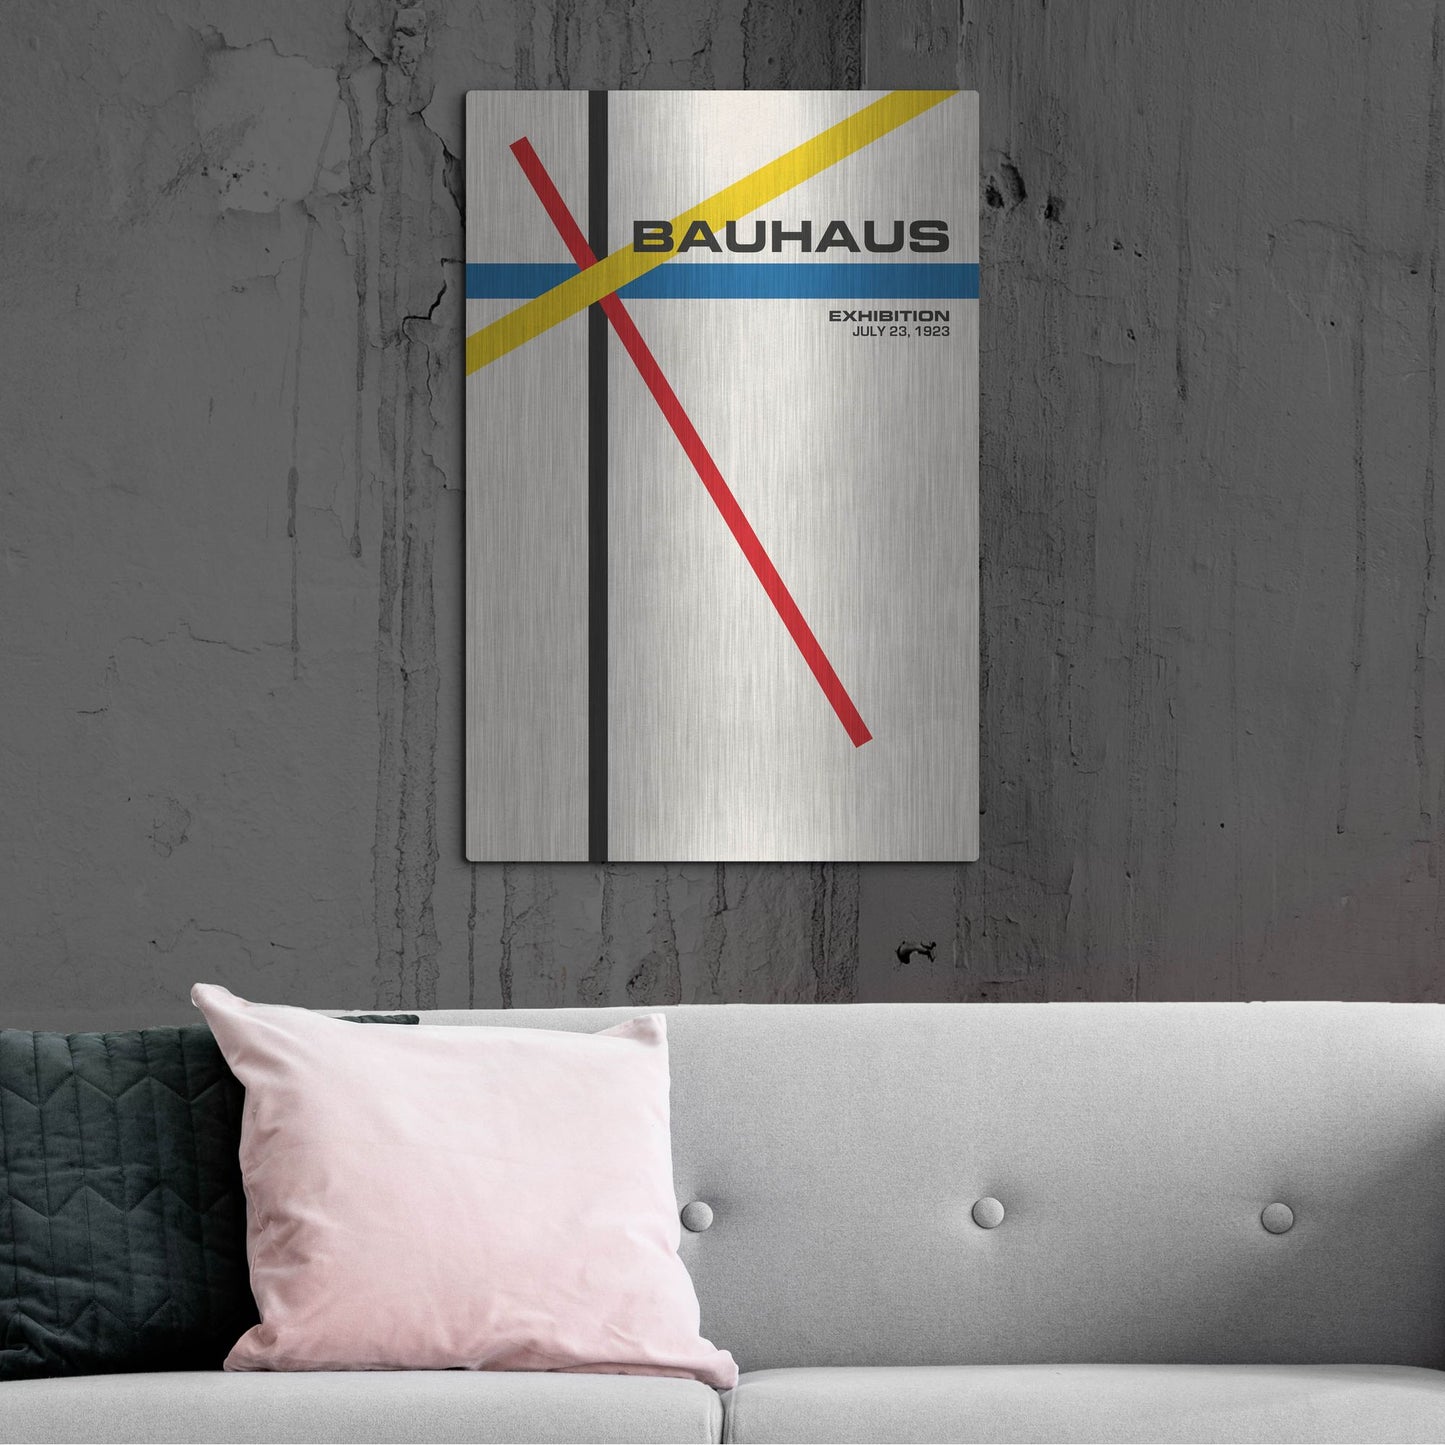 Luxe Metal Art 'Bauhaus 5' by Gary Williams, Metal Wall Art,24x36